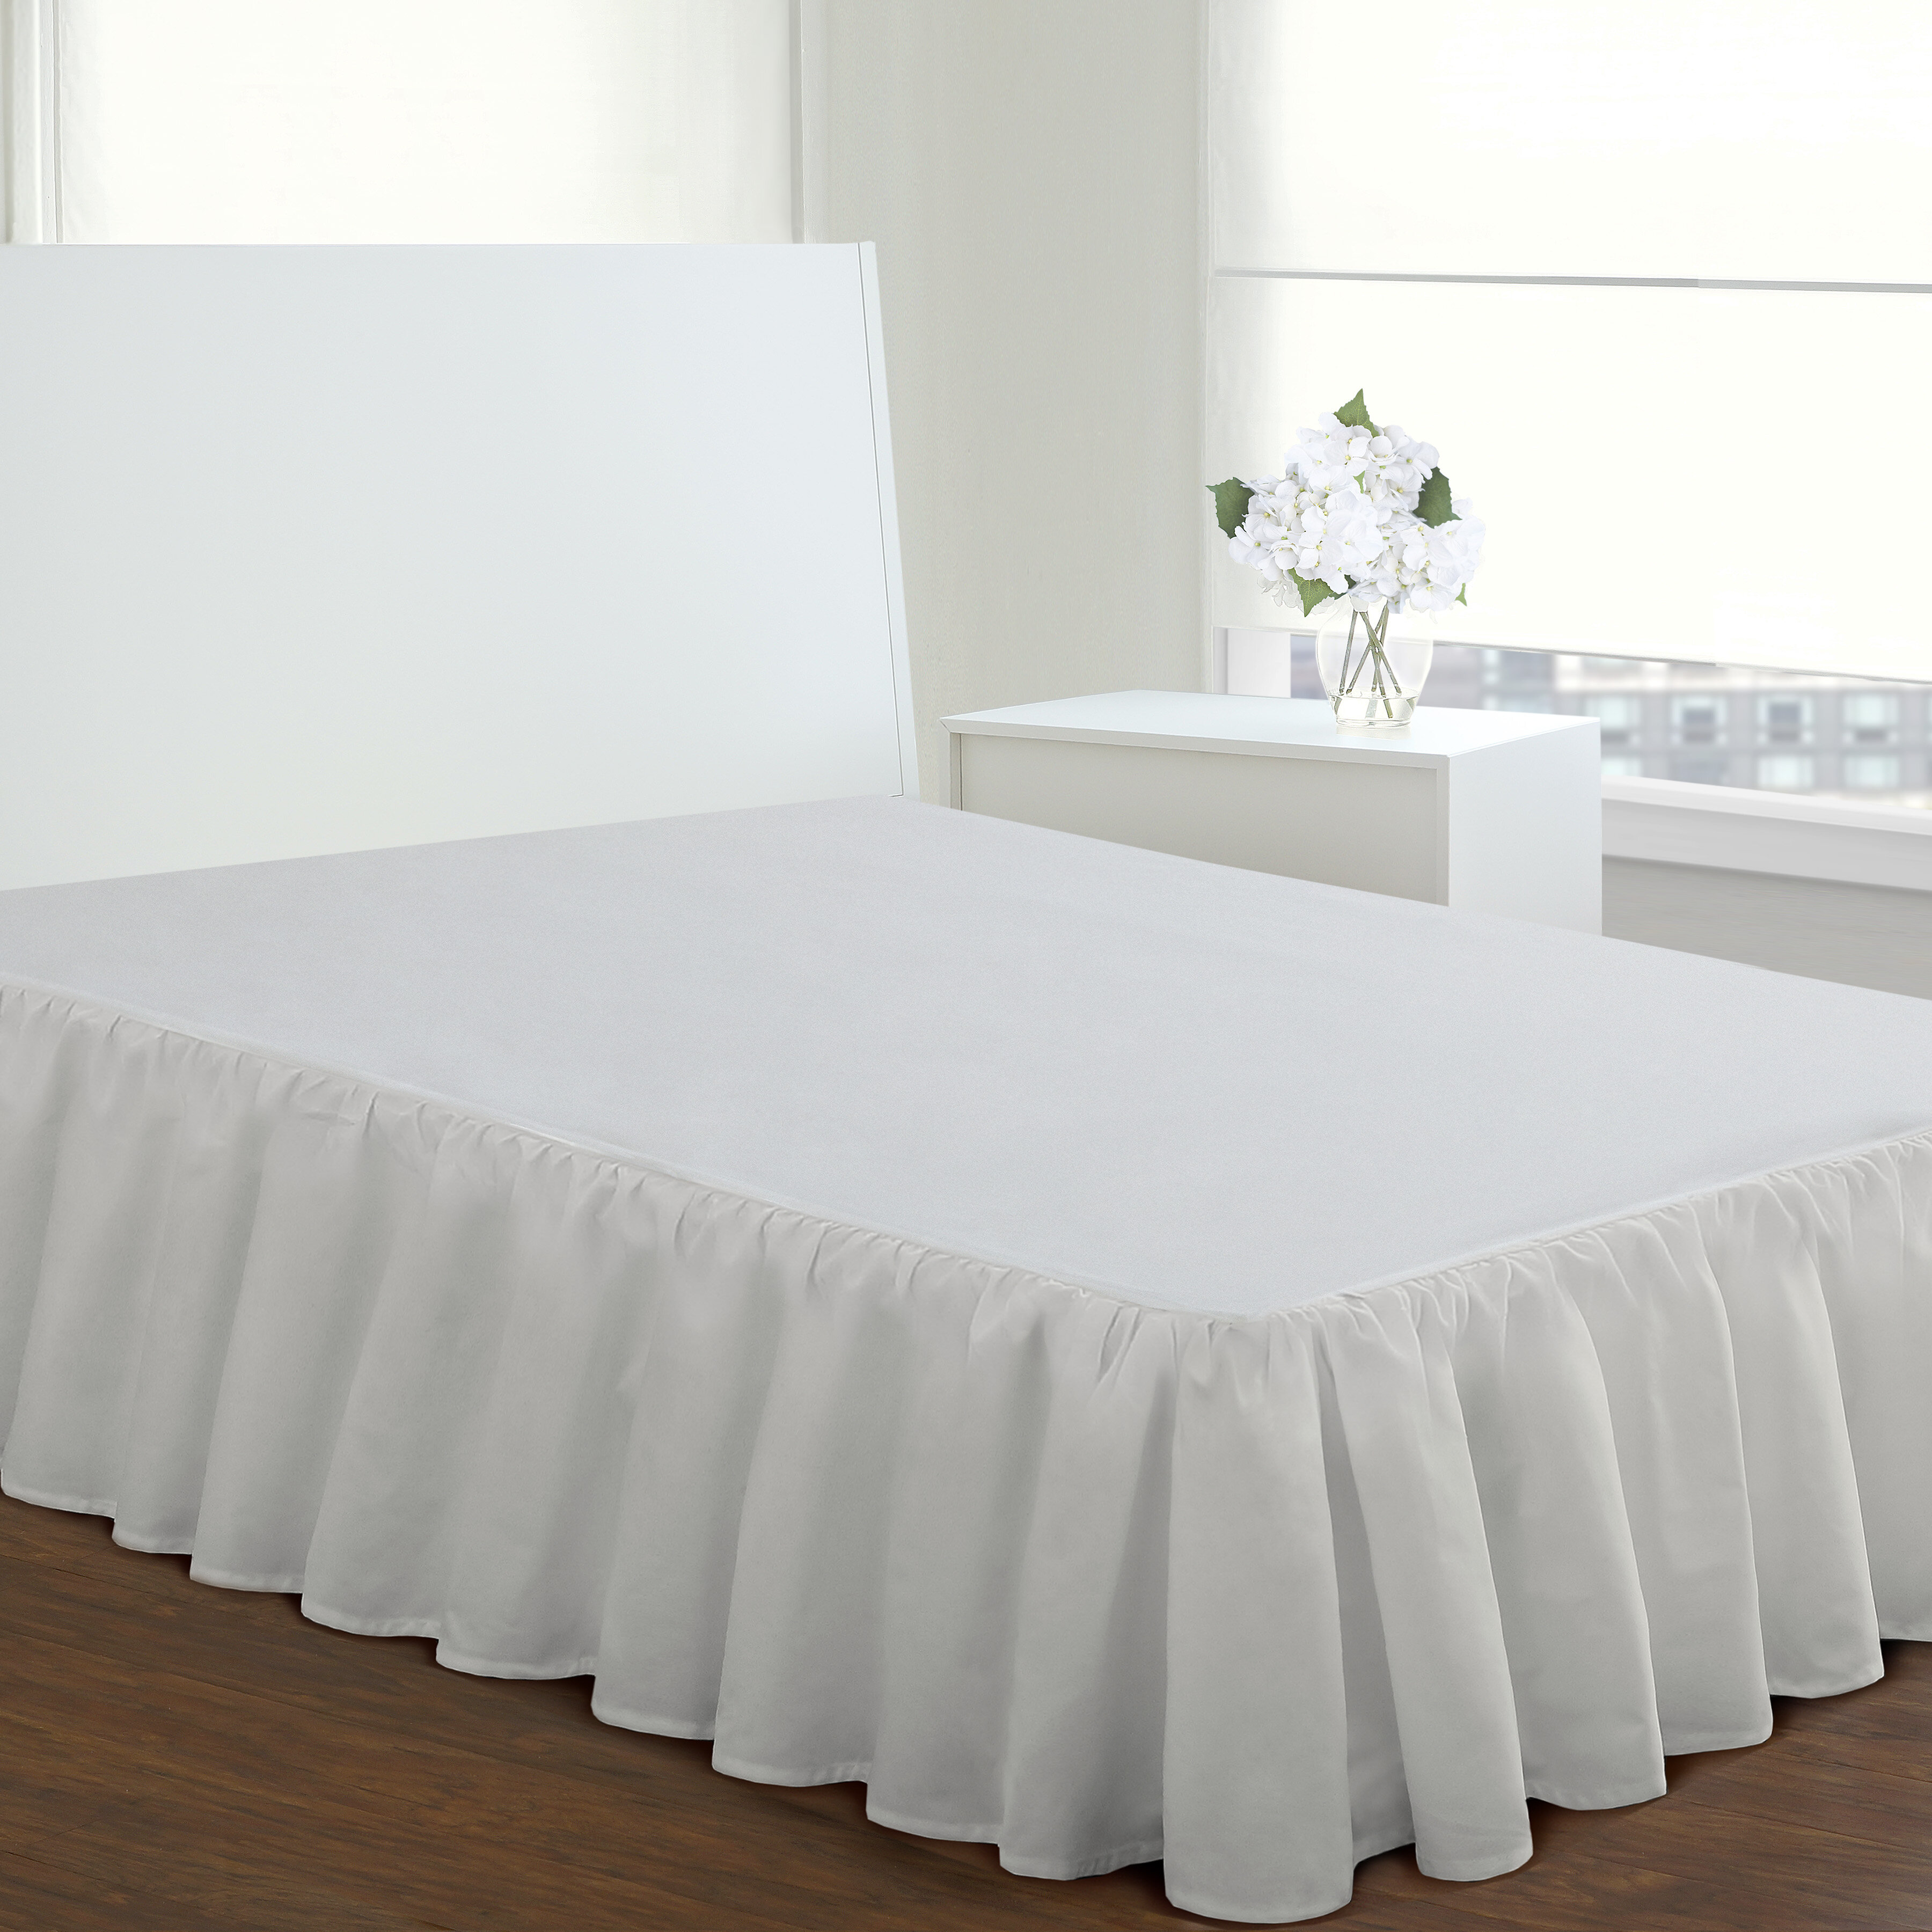 Alwyn Home Tailored Wrinkle Resistant Bed Skirt & Reviews - Wayfair Canada